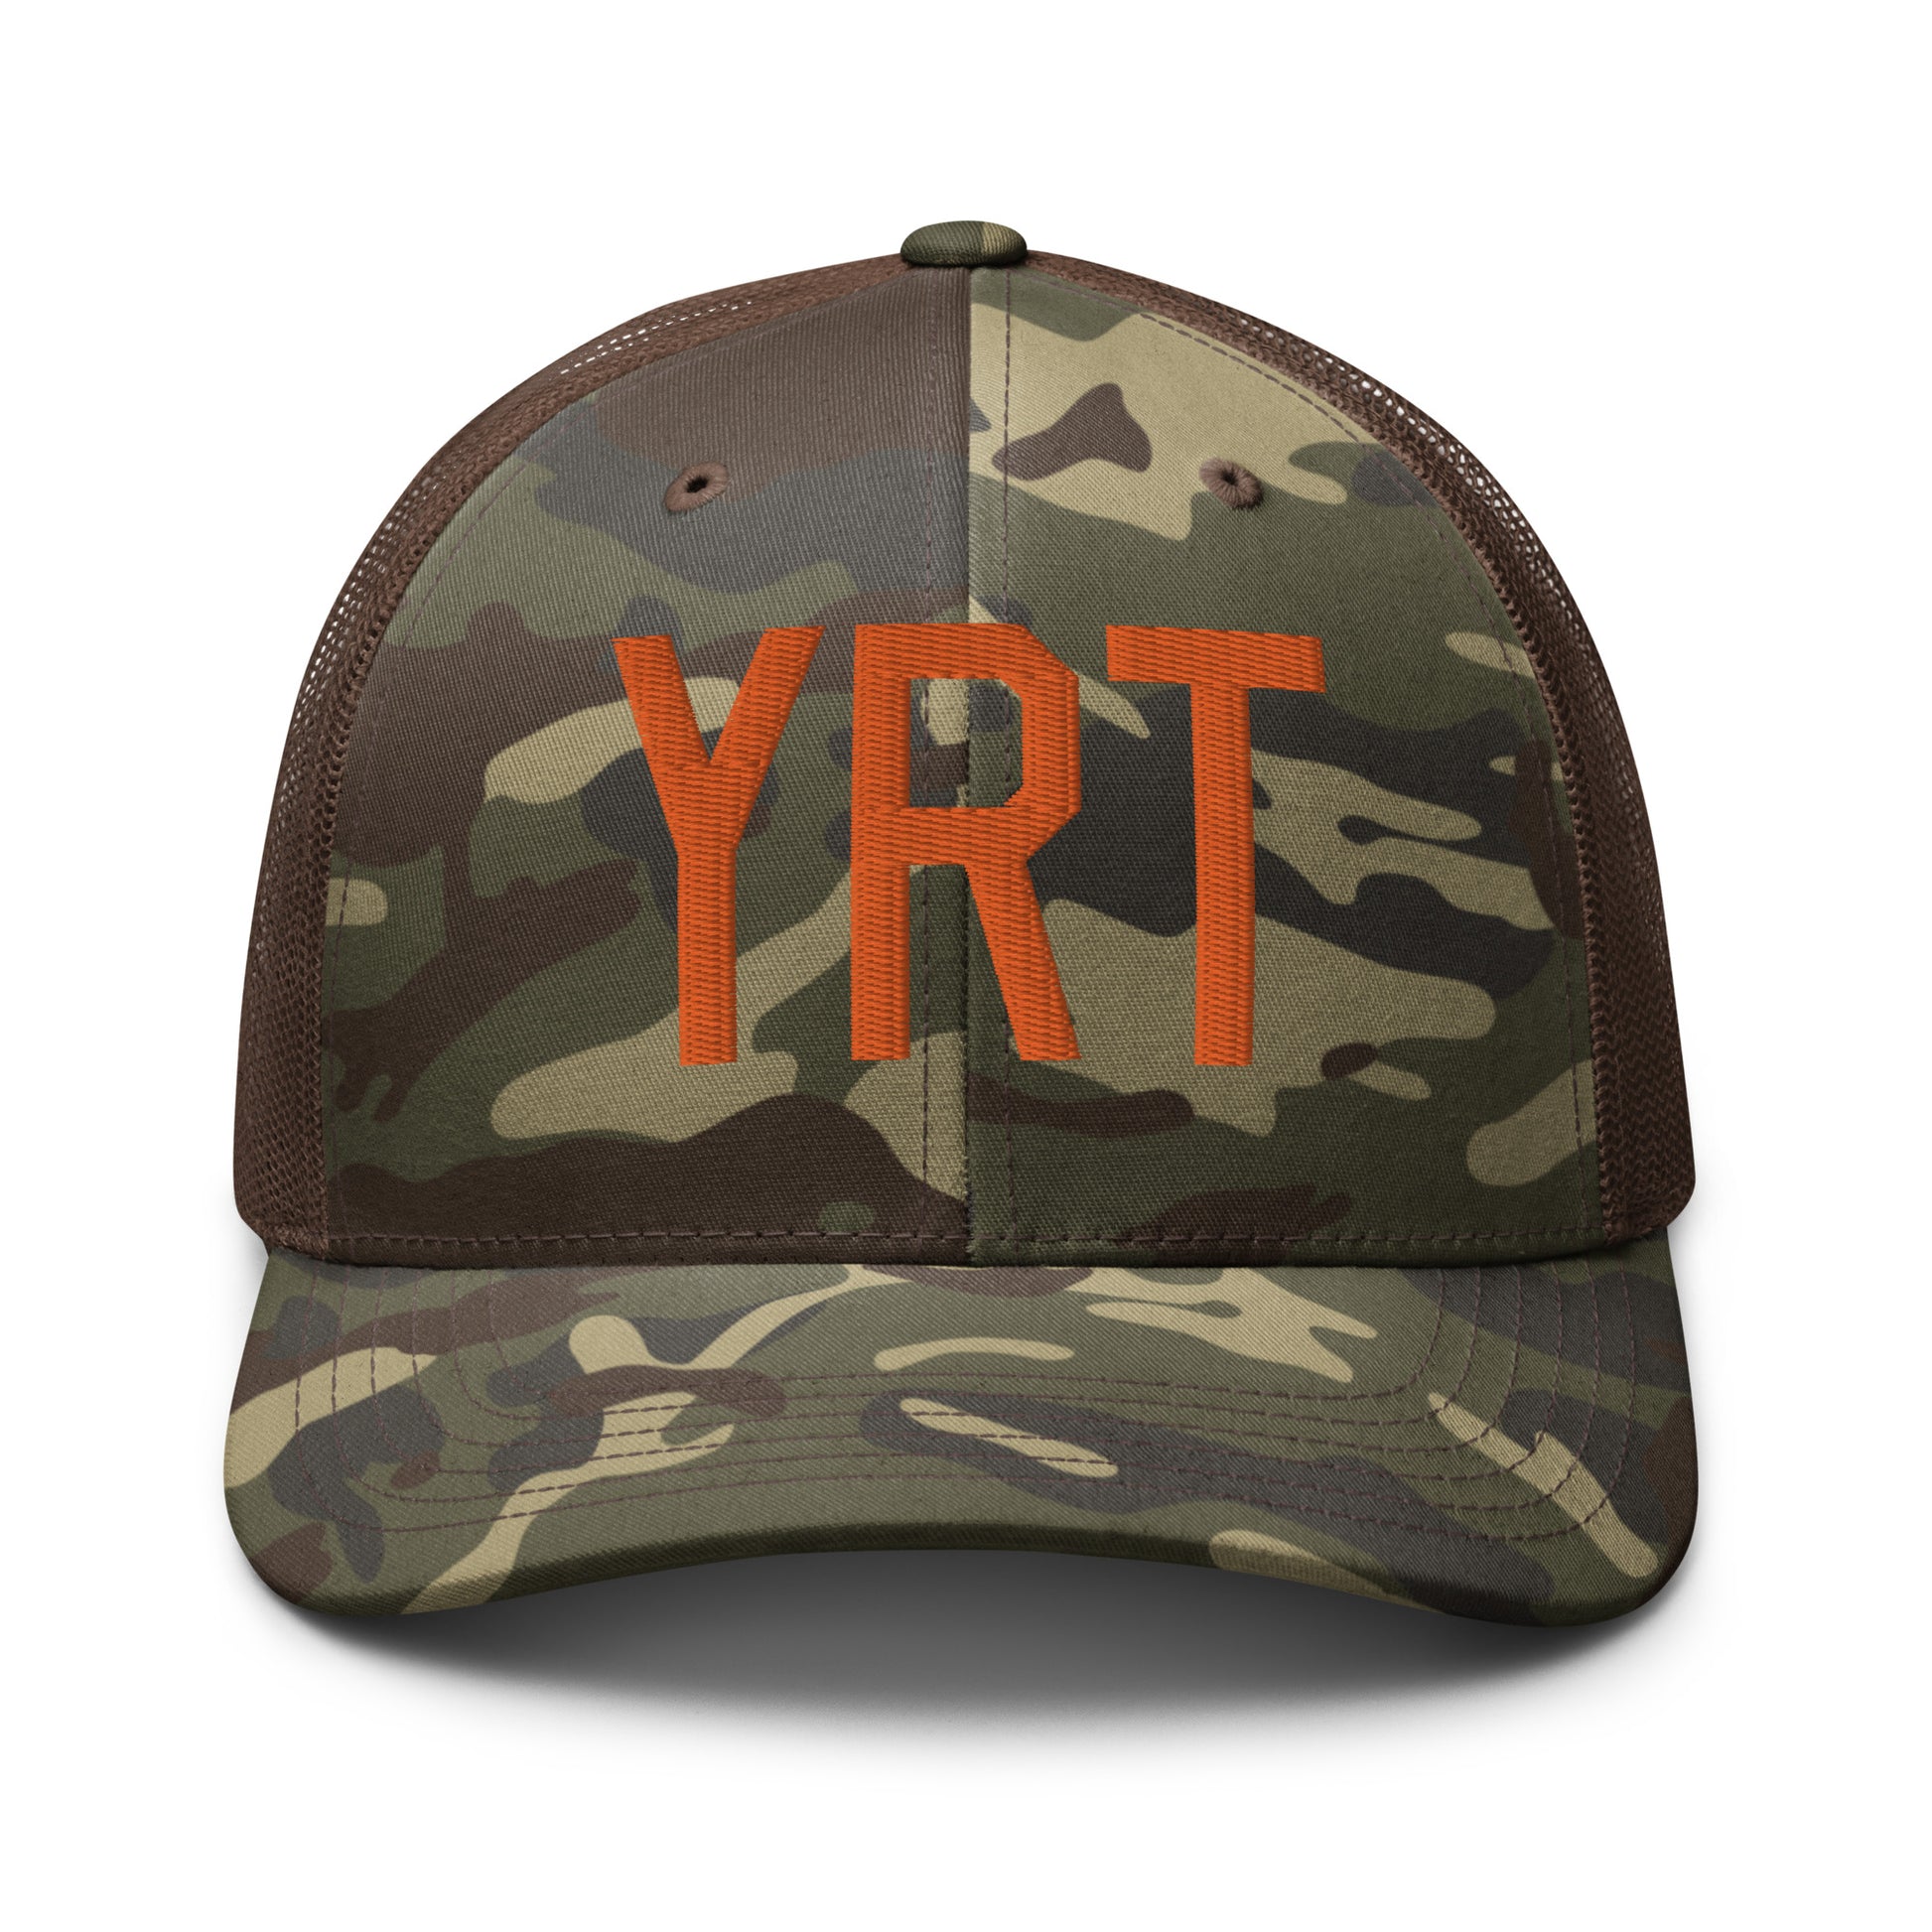 Airport Code Camouflage Trucker Hat - Orange • YRT Rankin Inlet • YHM Designs - Image 13